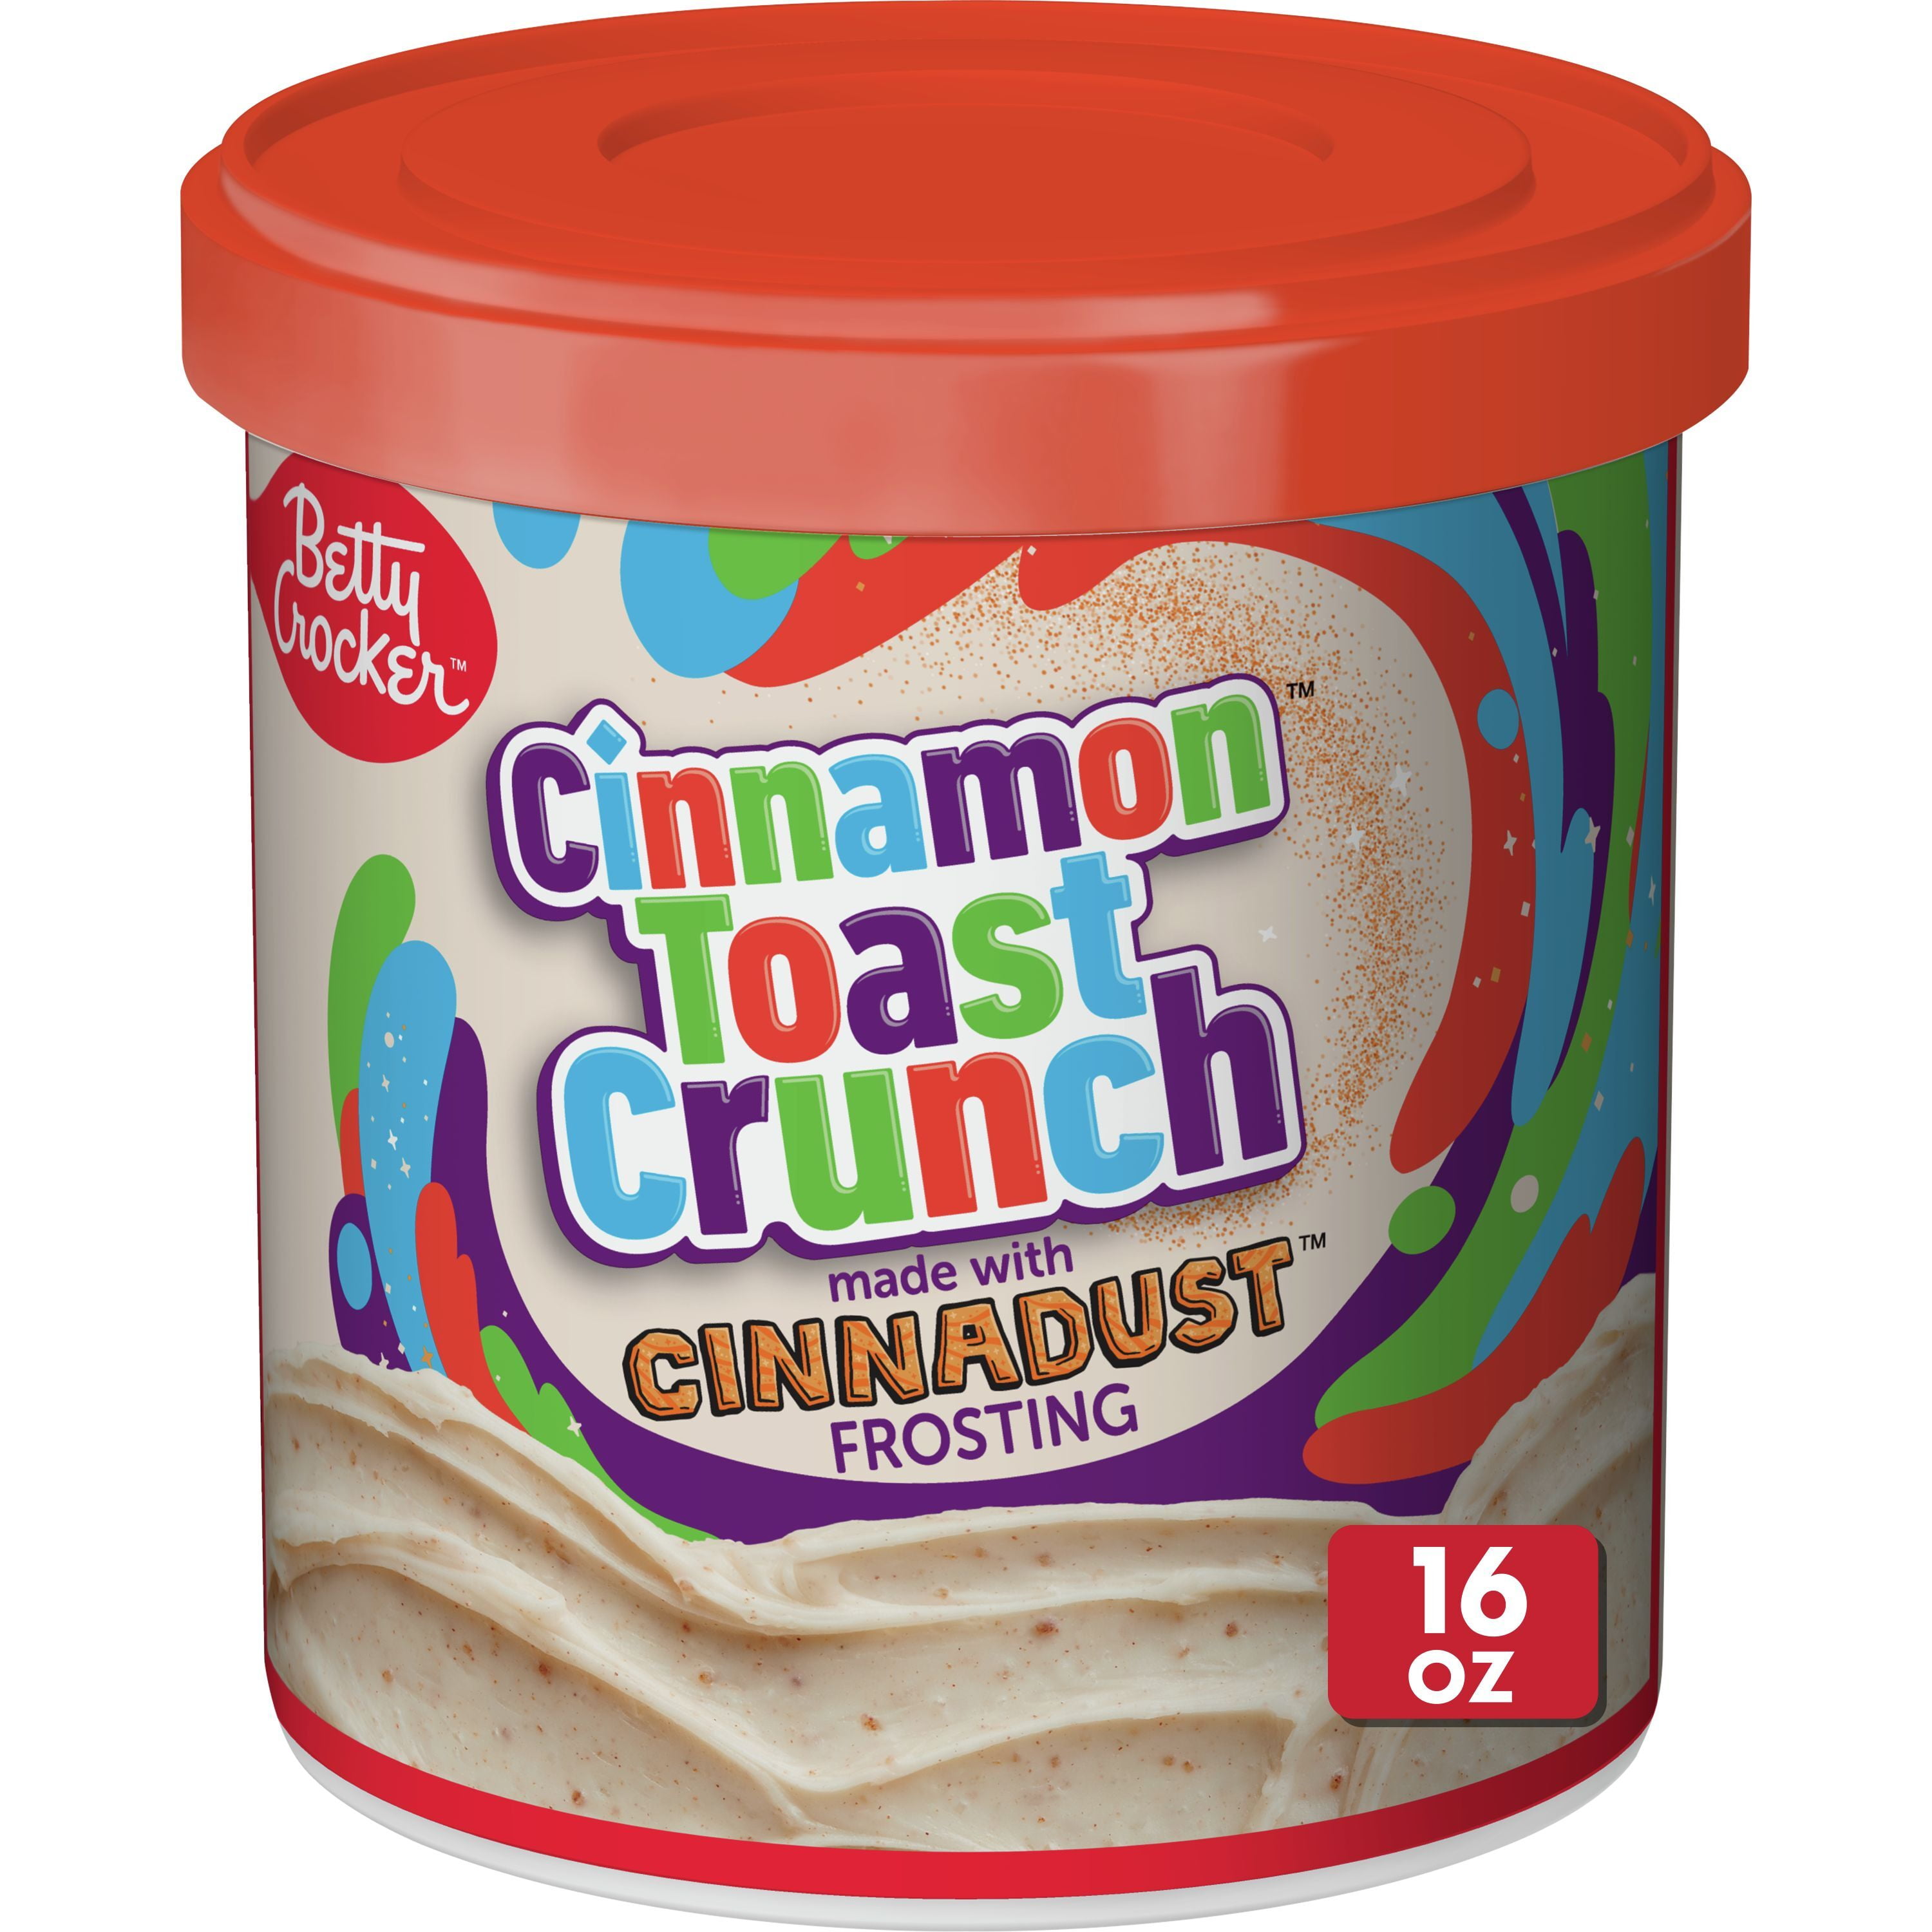 Betty Crocker Cinnamon Toast Crunch Frosting Gluten Free